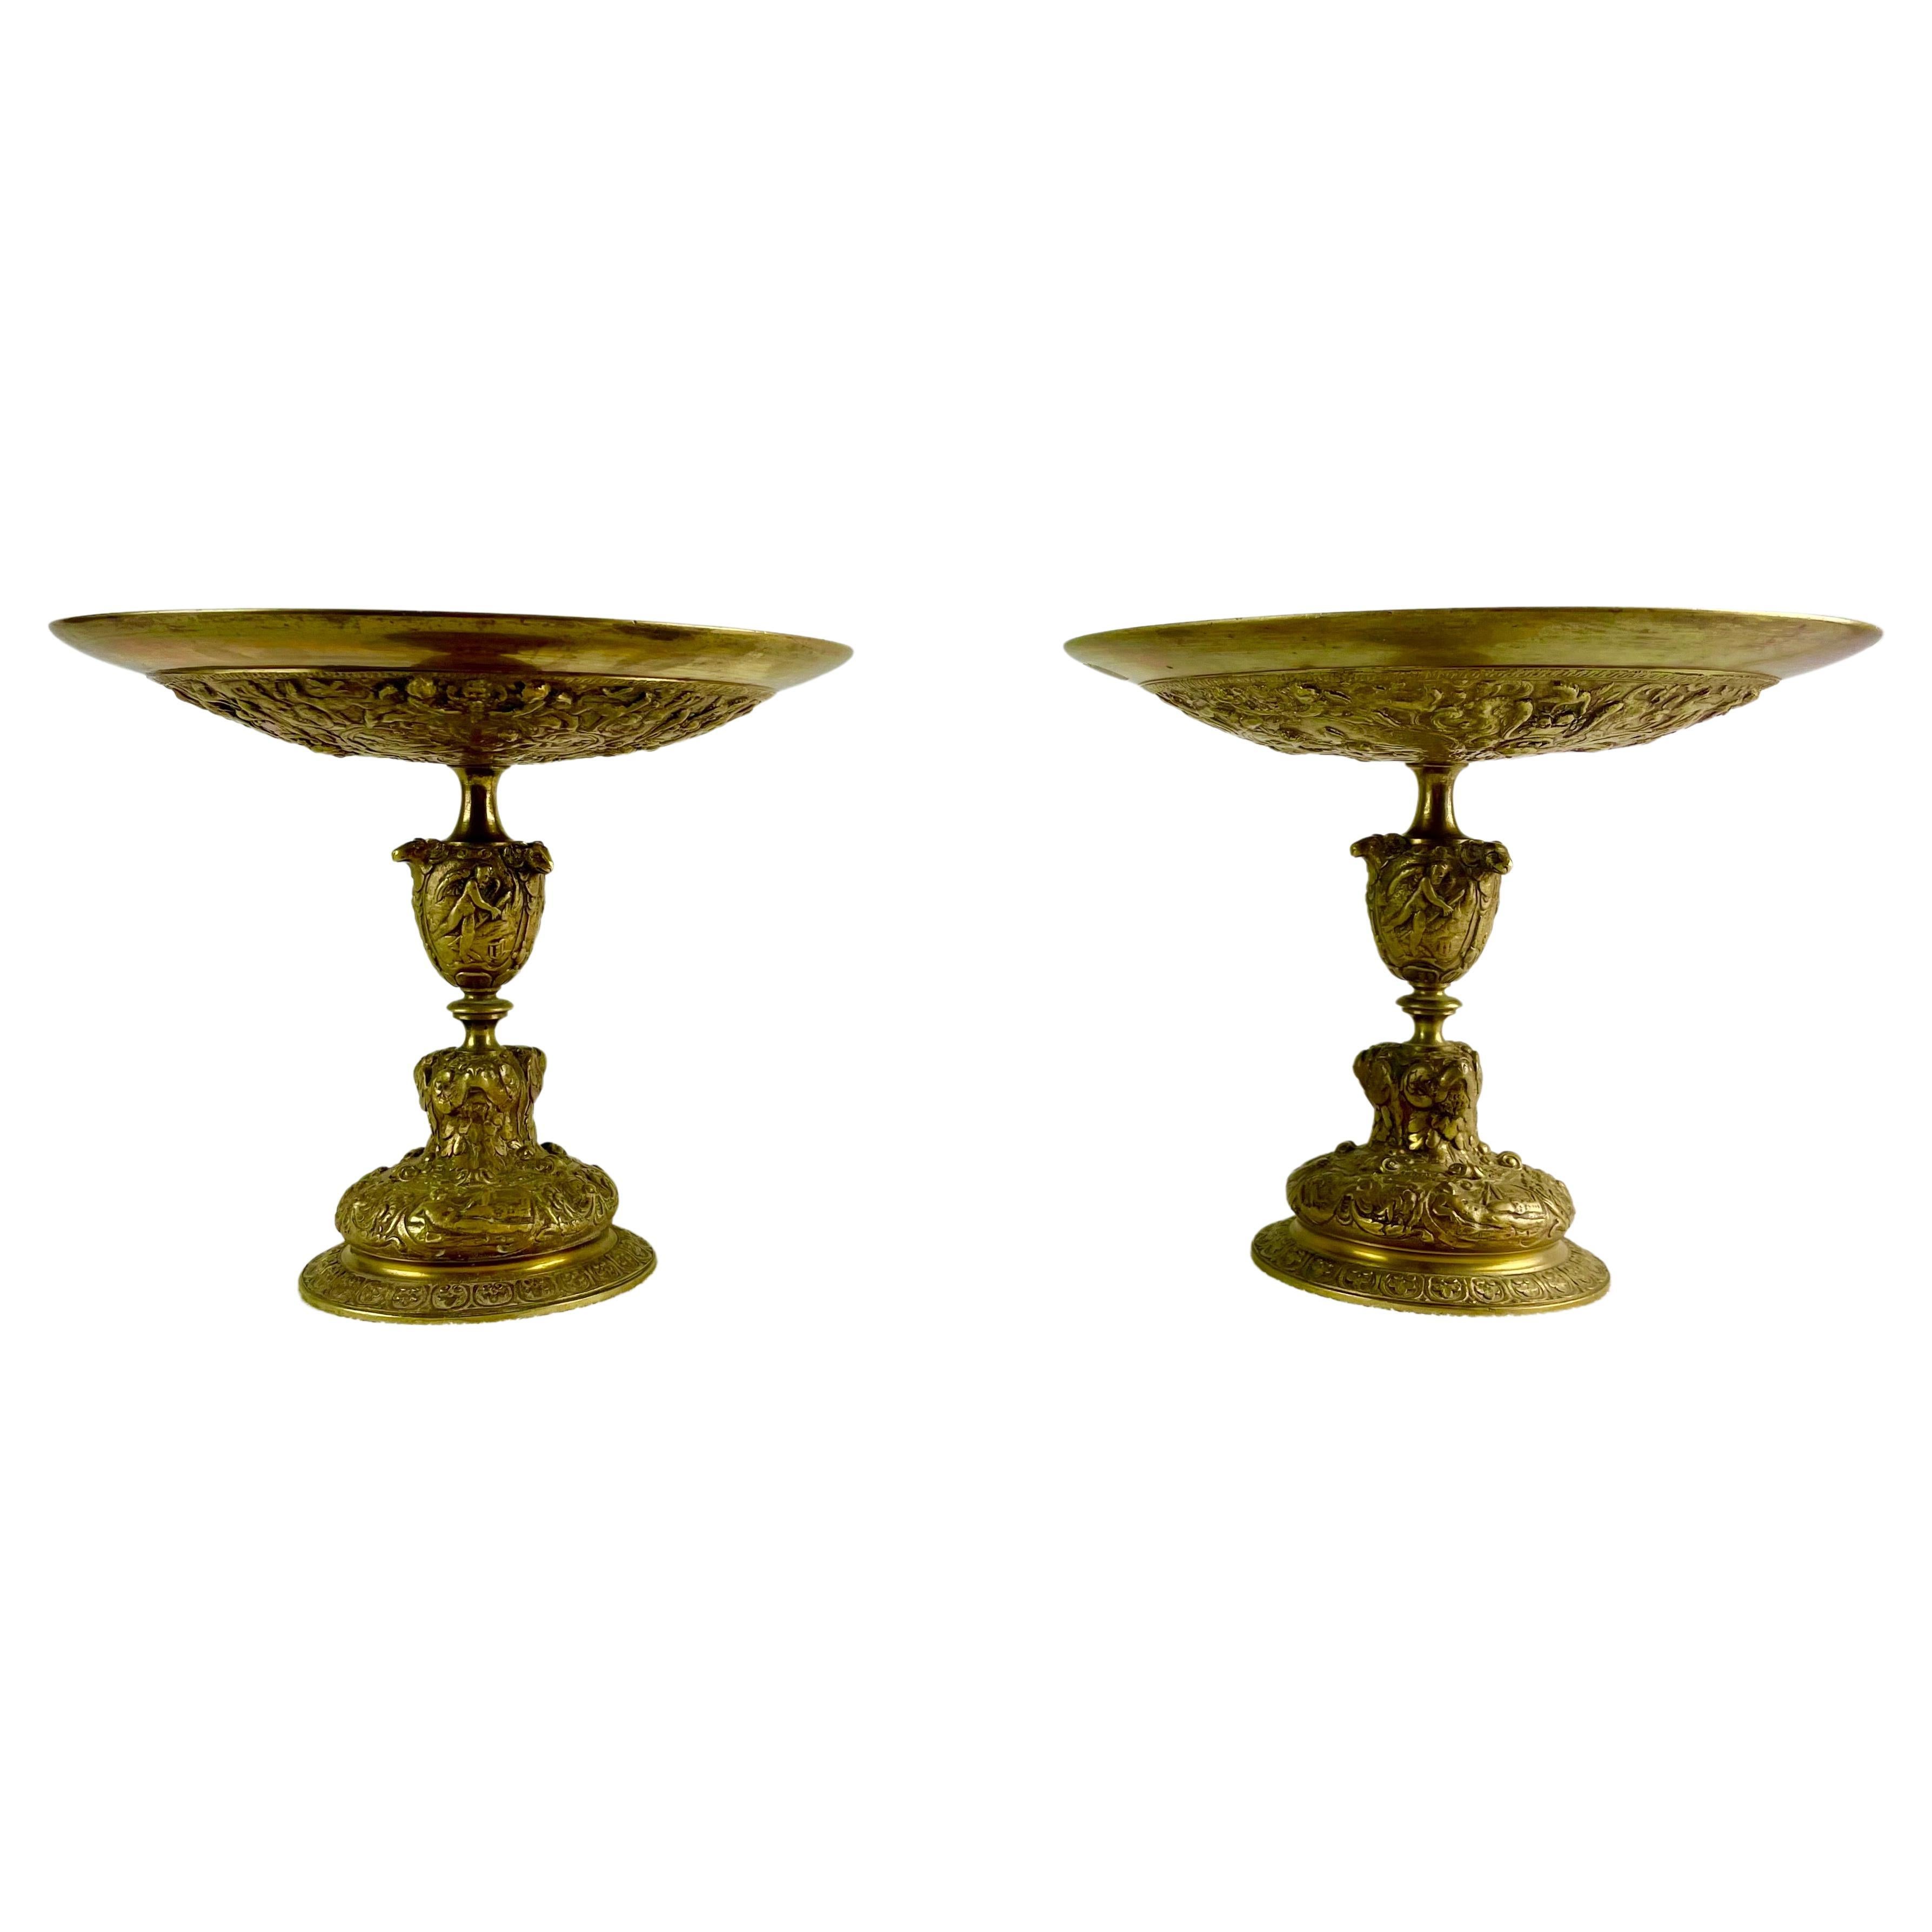 Très belle paire de coupes tazza de style Renaissance en bronze doré richement ciselé.
Cette paire de coupes provient d'une collection privée française. Ce sont des produits de la seconde moitié du XIXe siècle, à une époque où l'histoire du Moyen